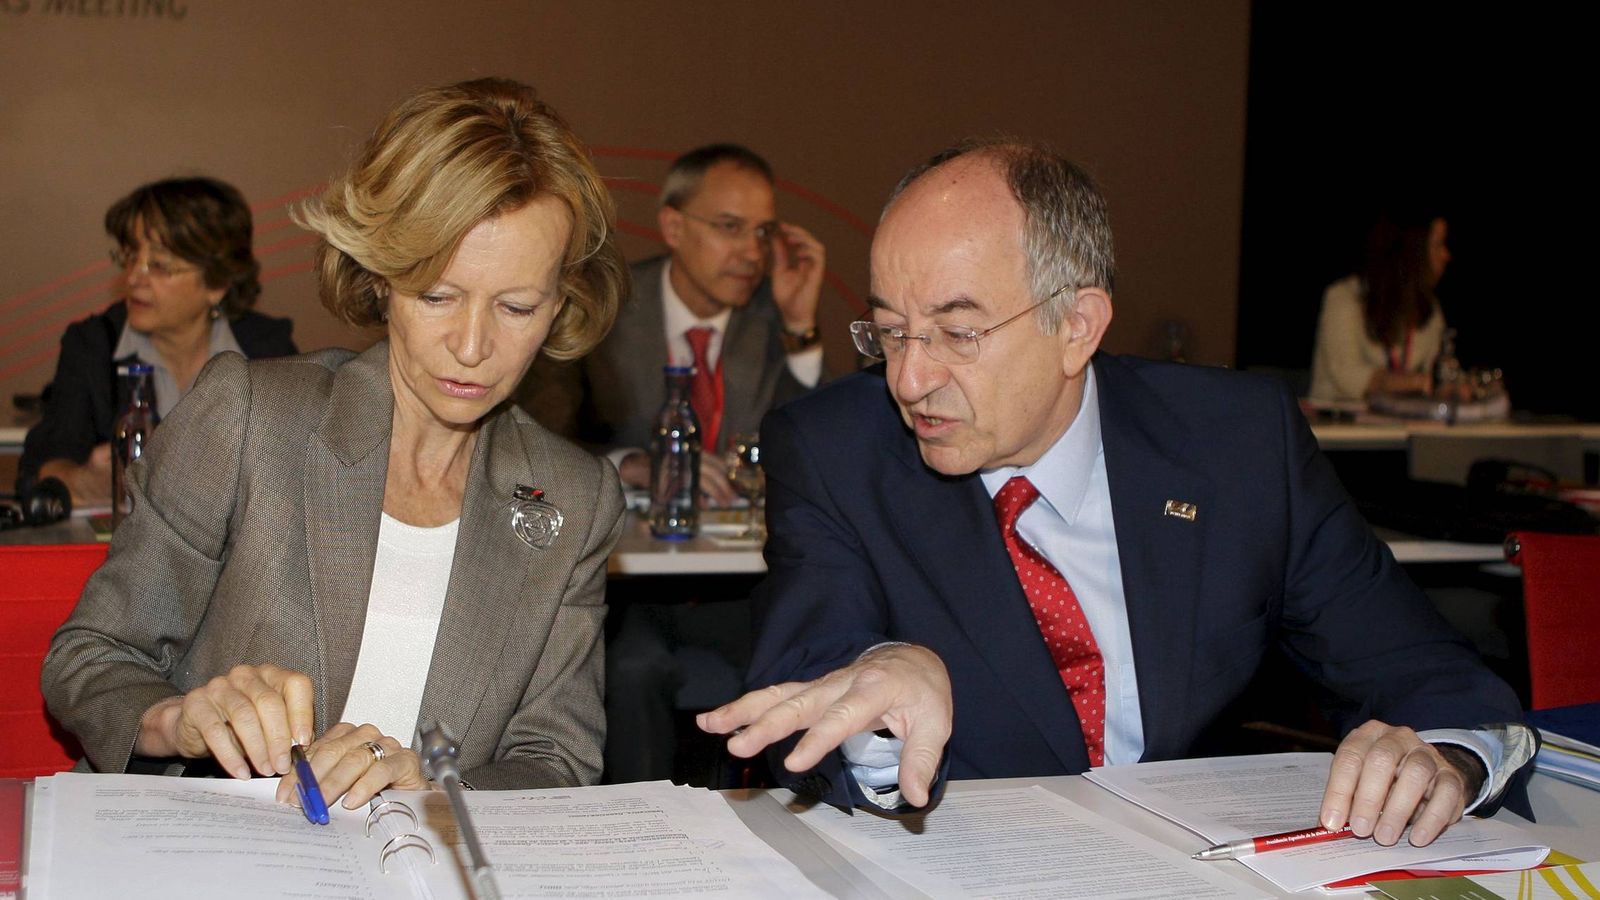 Foto: La ministra de Economía en 2010, Elena Salgado, junto al entonces gobernador del Banco de España, Miguel Ángel Fernández Ordóñez. (EFE)